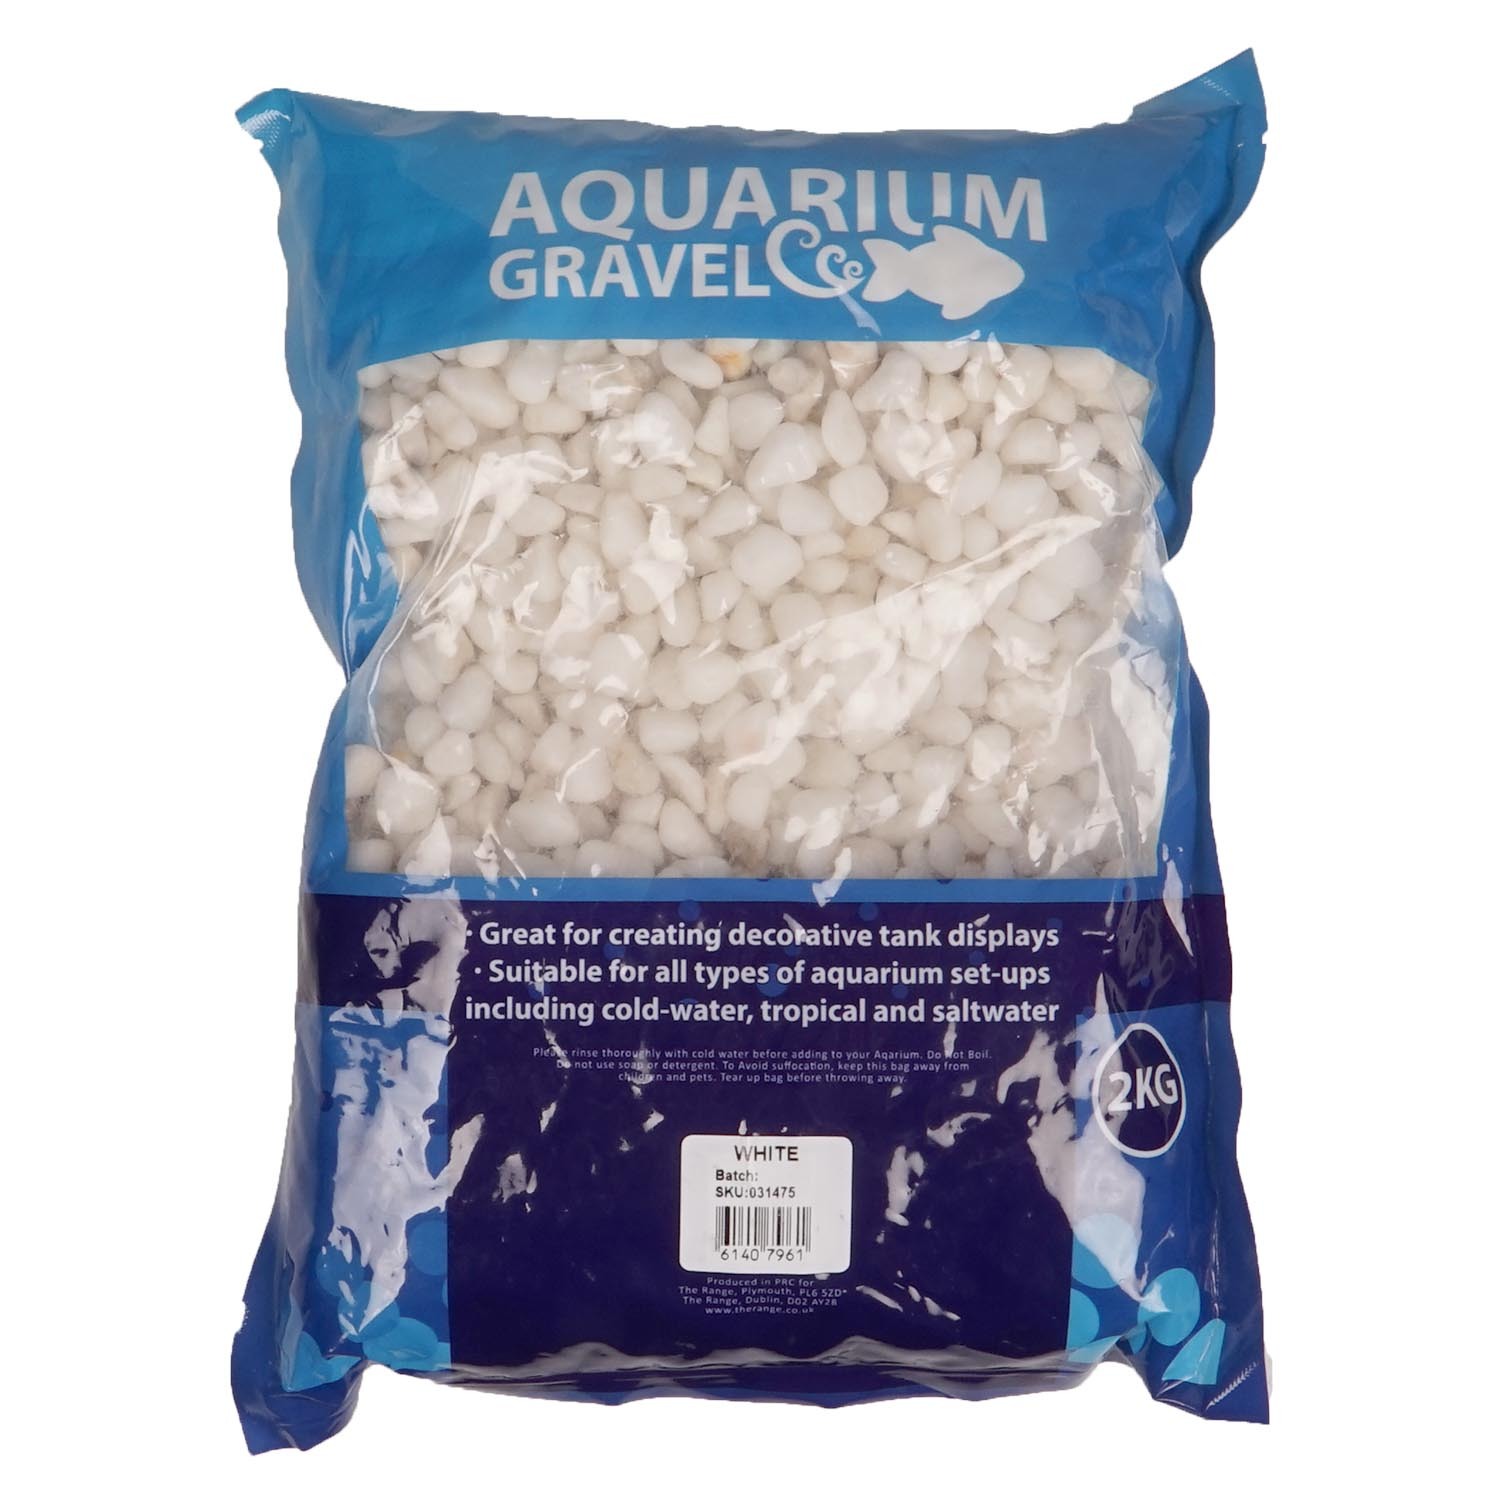 White Aquarium Gravel 2kg Image